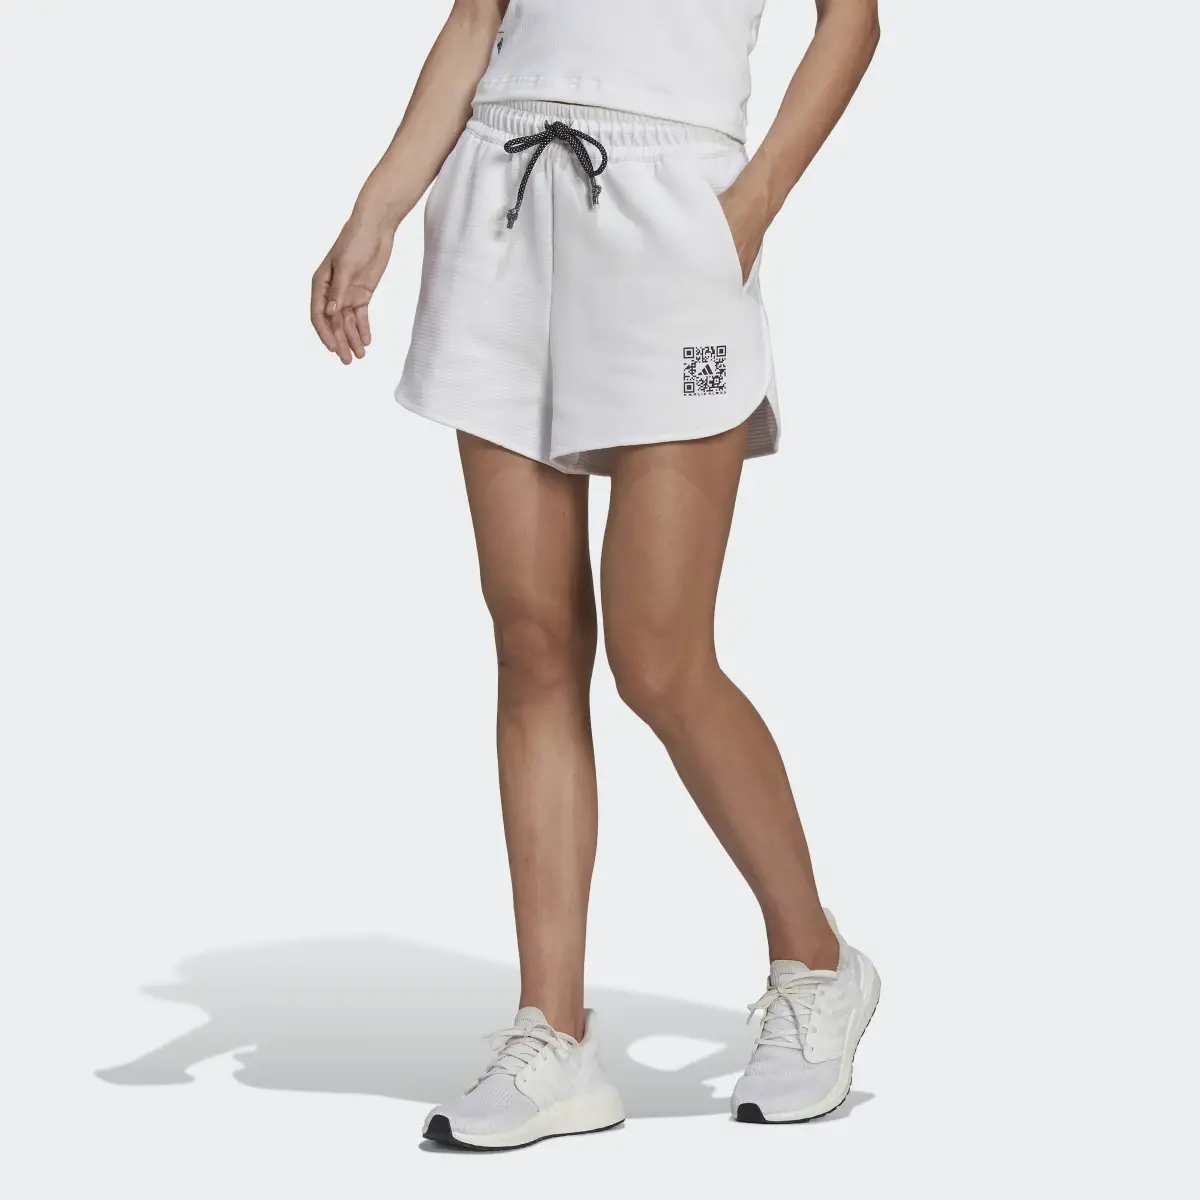 Adidas Karlie Kloss x adidas Shorts. 1